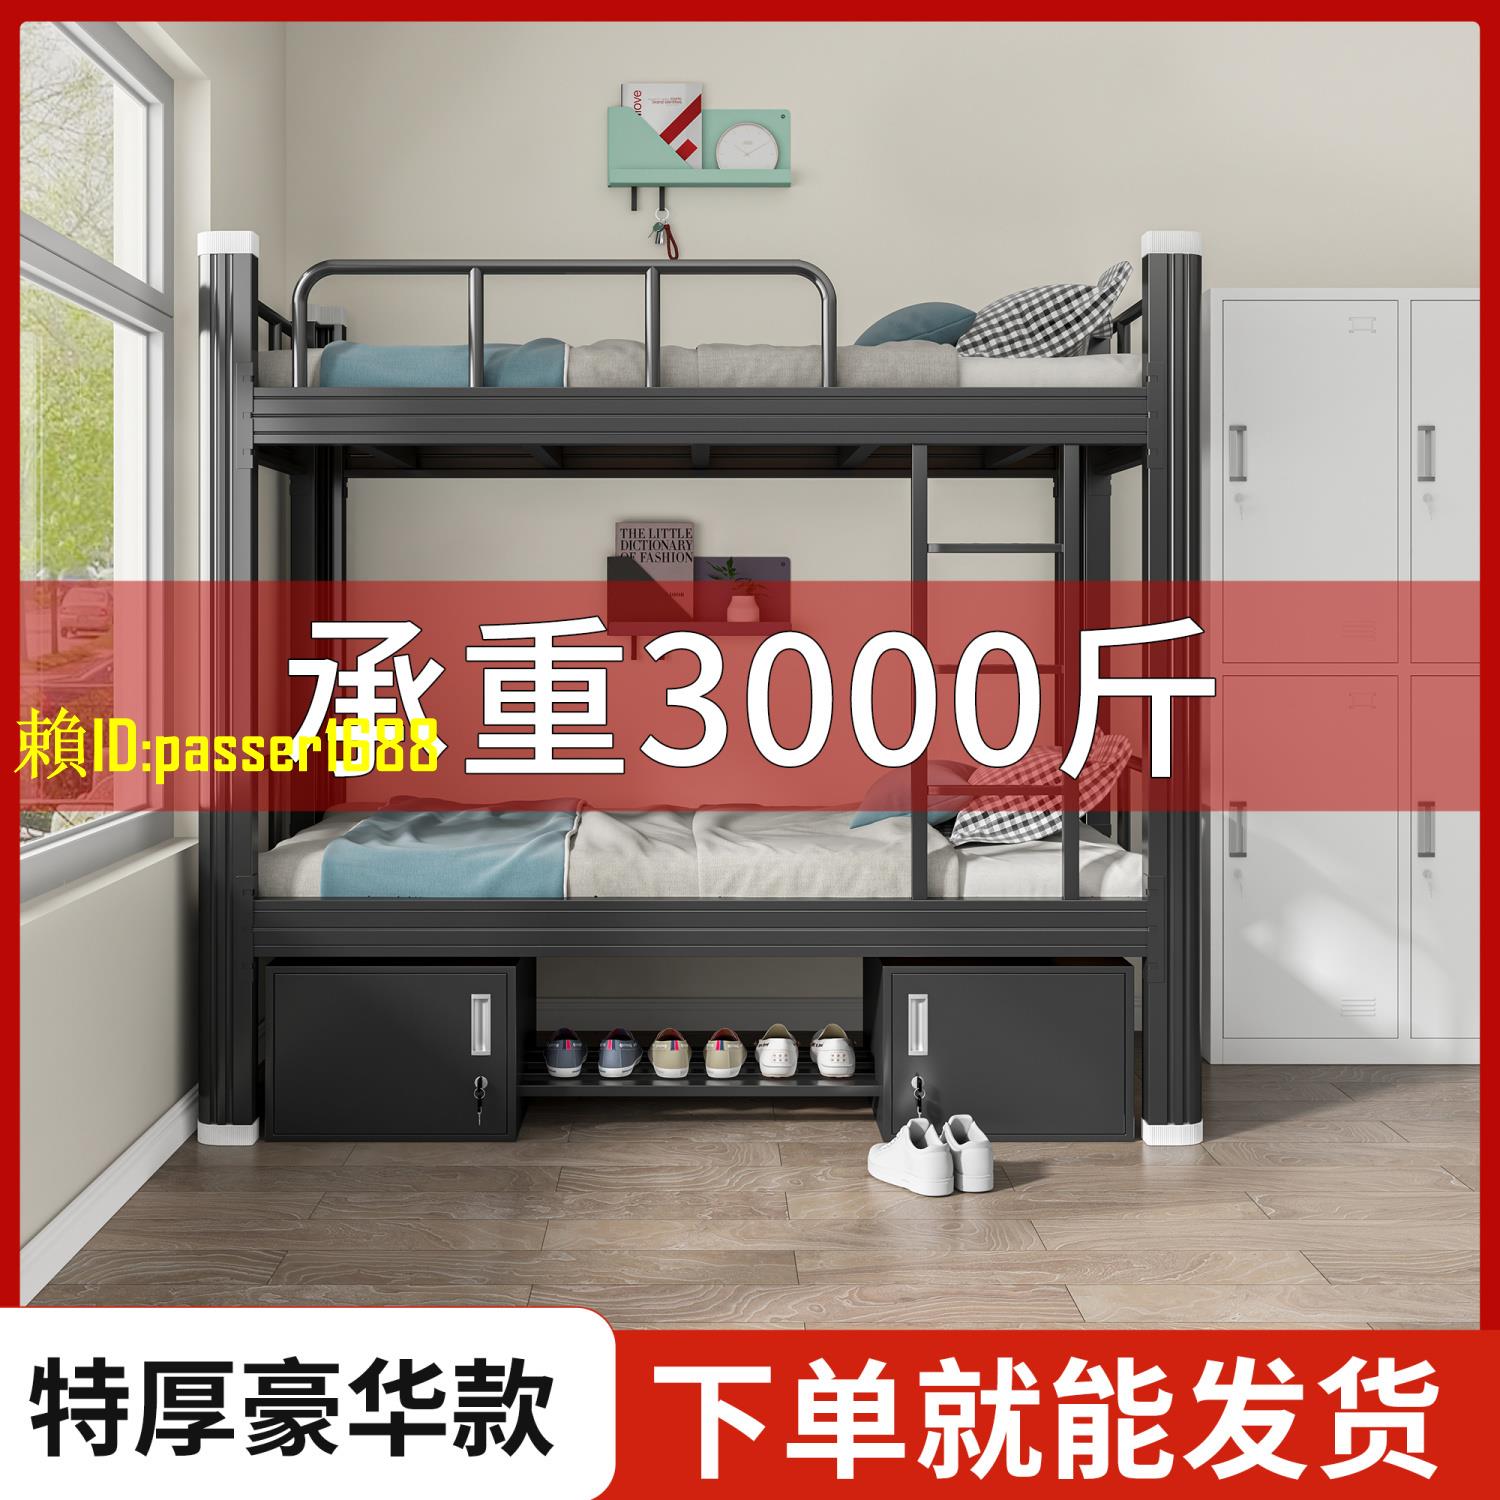 【新品】上下鋪鐵架床雙層床高低床1米宿舍員工1.2米鐵藝床雙人床公寓鐵床